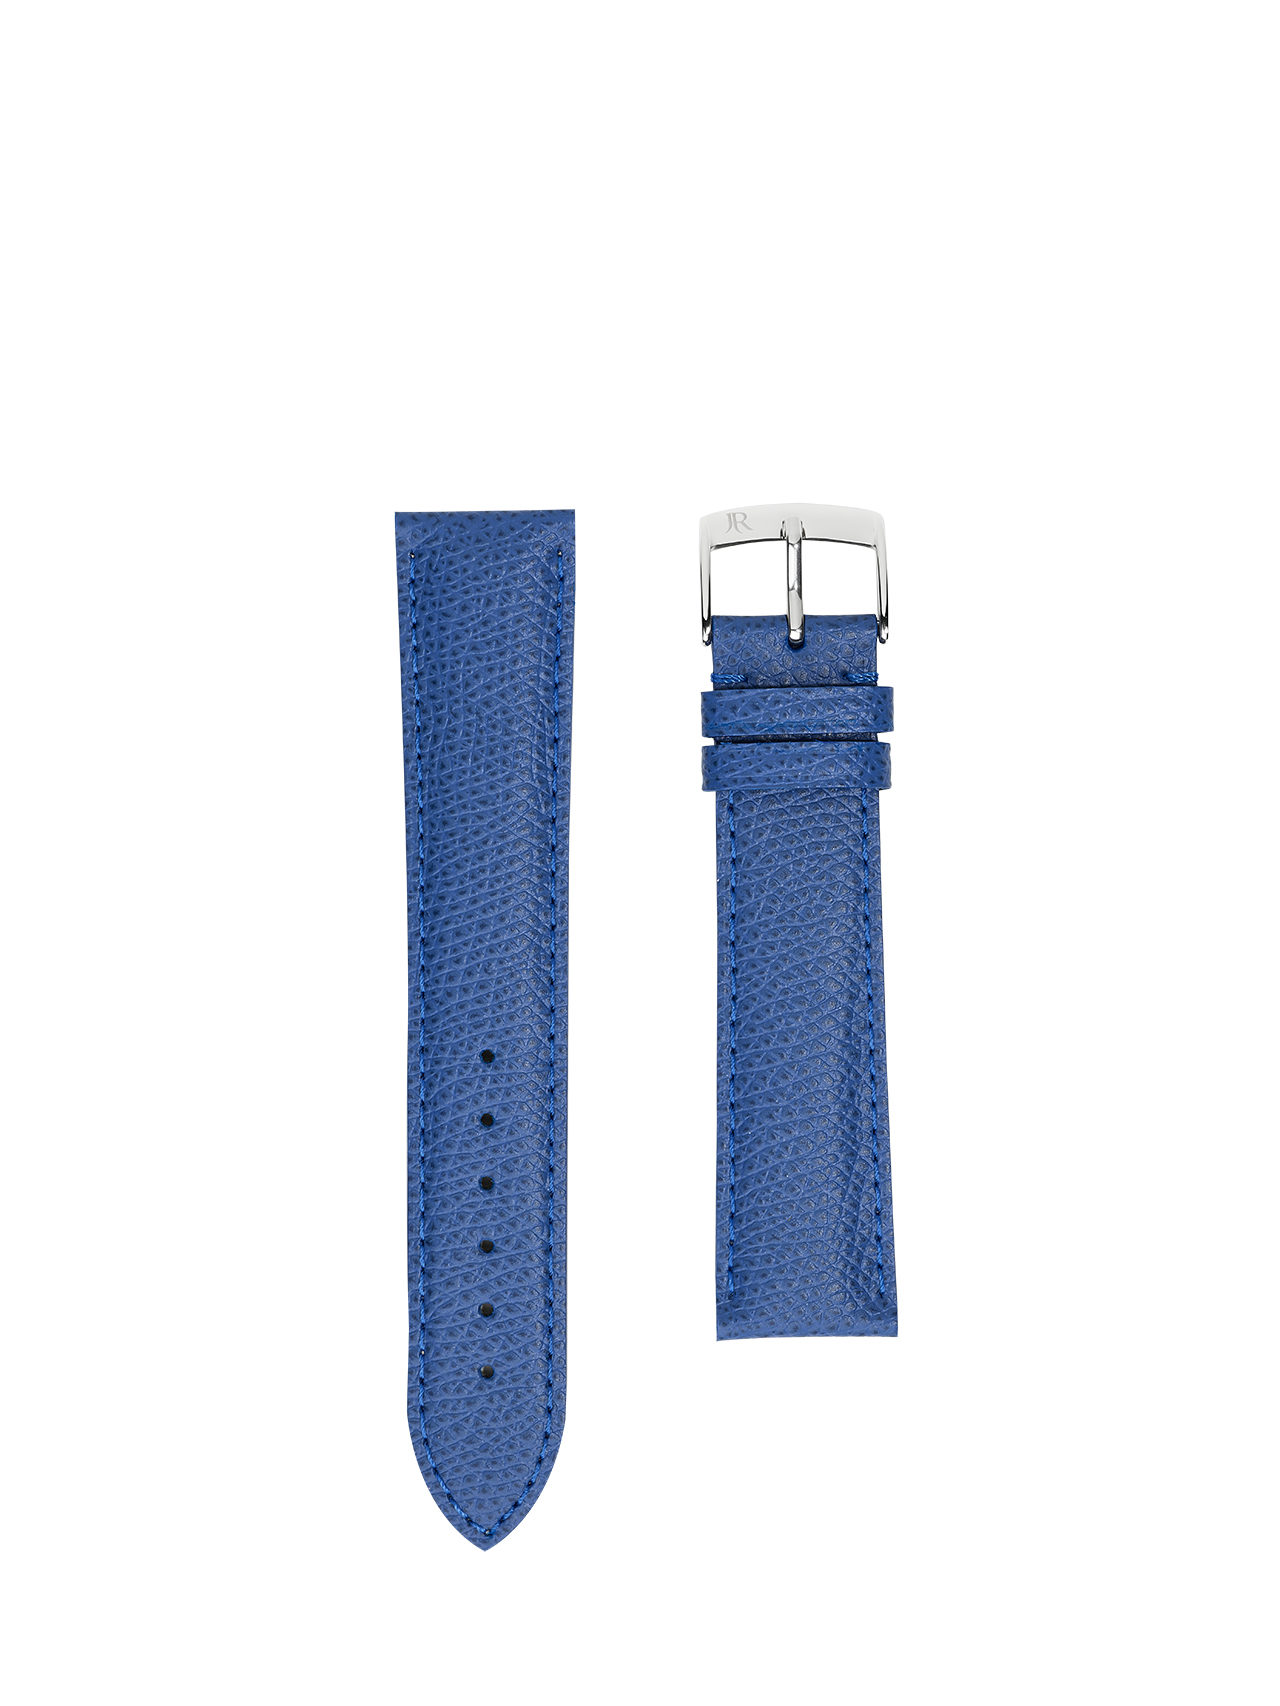 watch strap crocodile jean rousseau blue